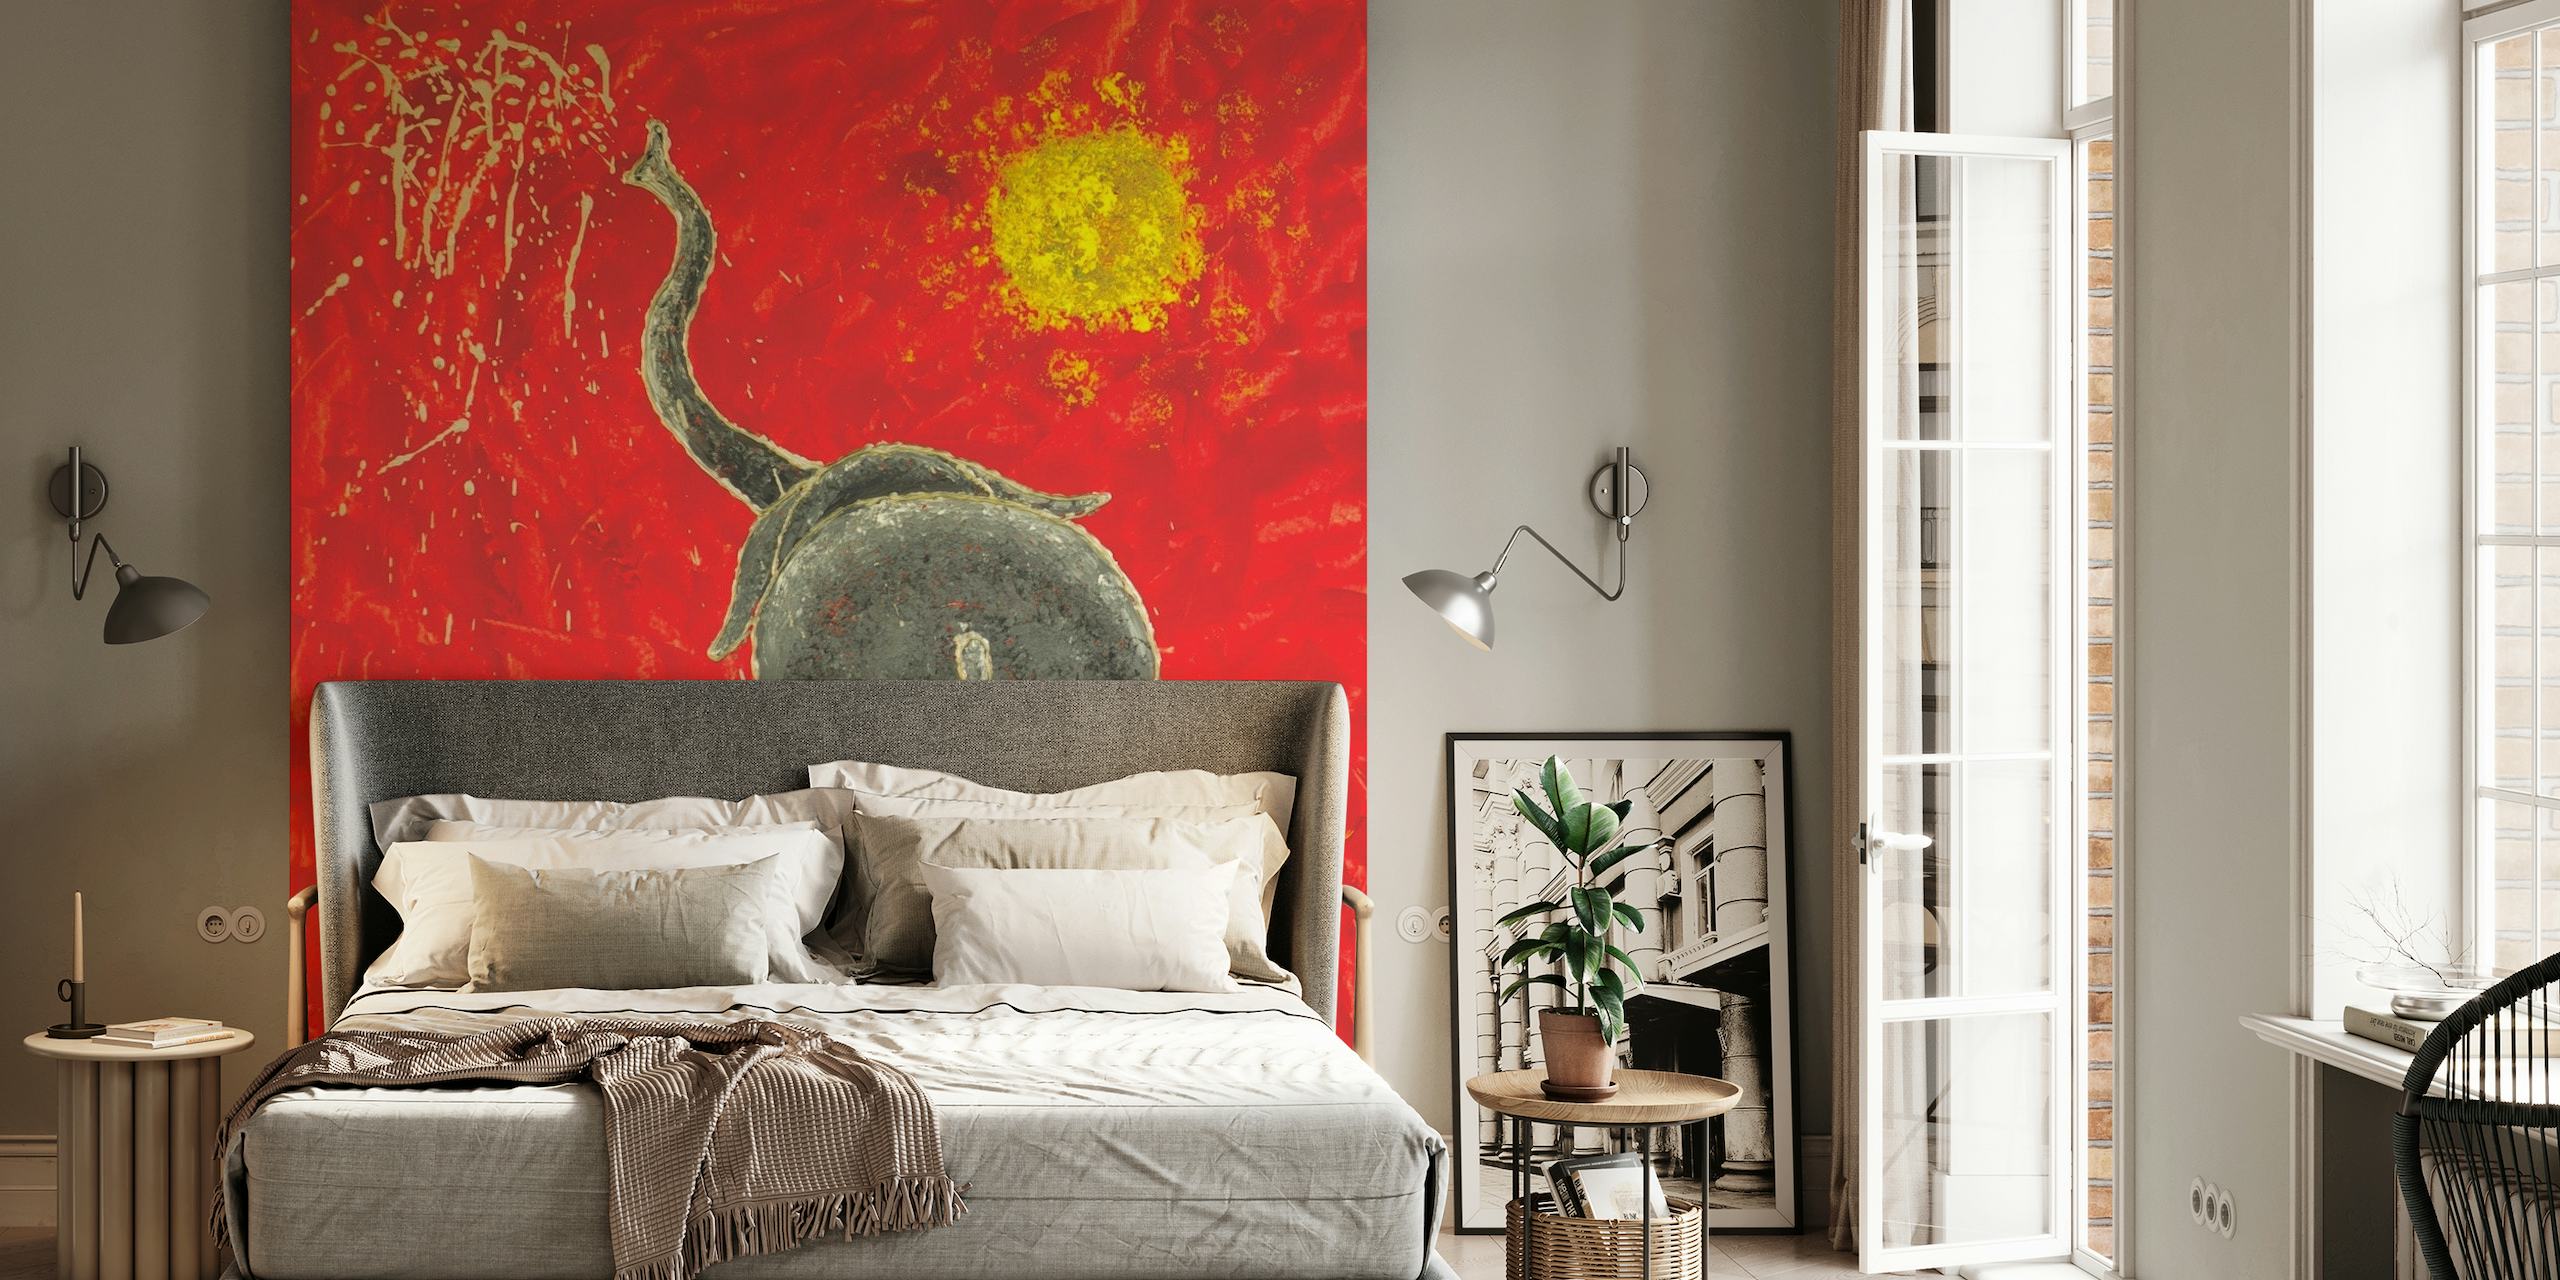 Papier peint artistique représentant un éléphant espiègle dans un style abstrait avec un fond rouge et un soleil jaune